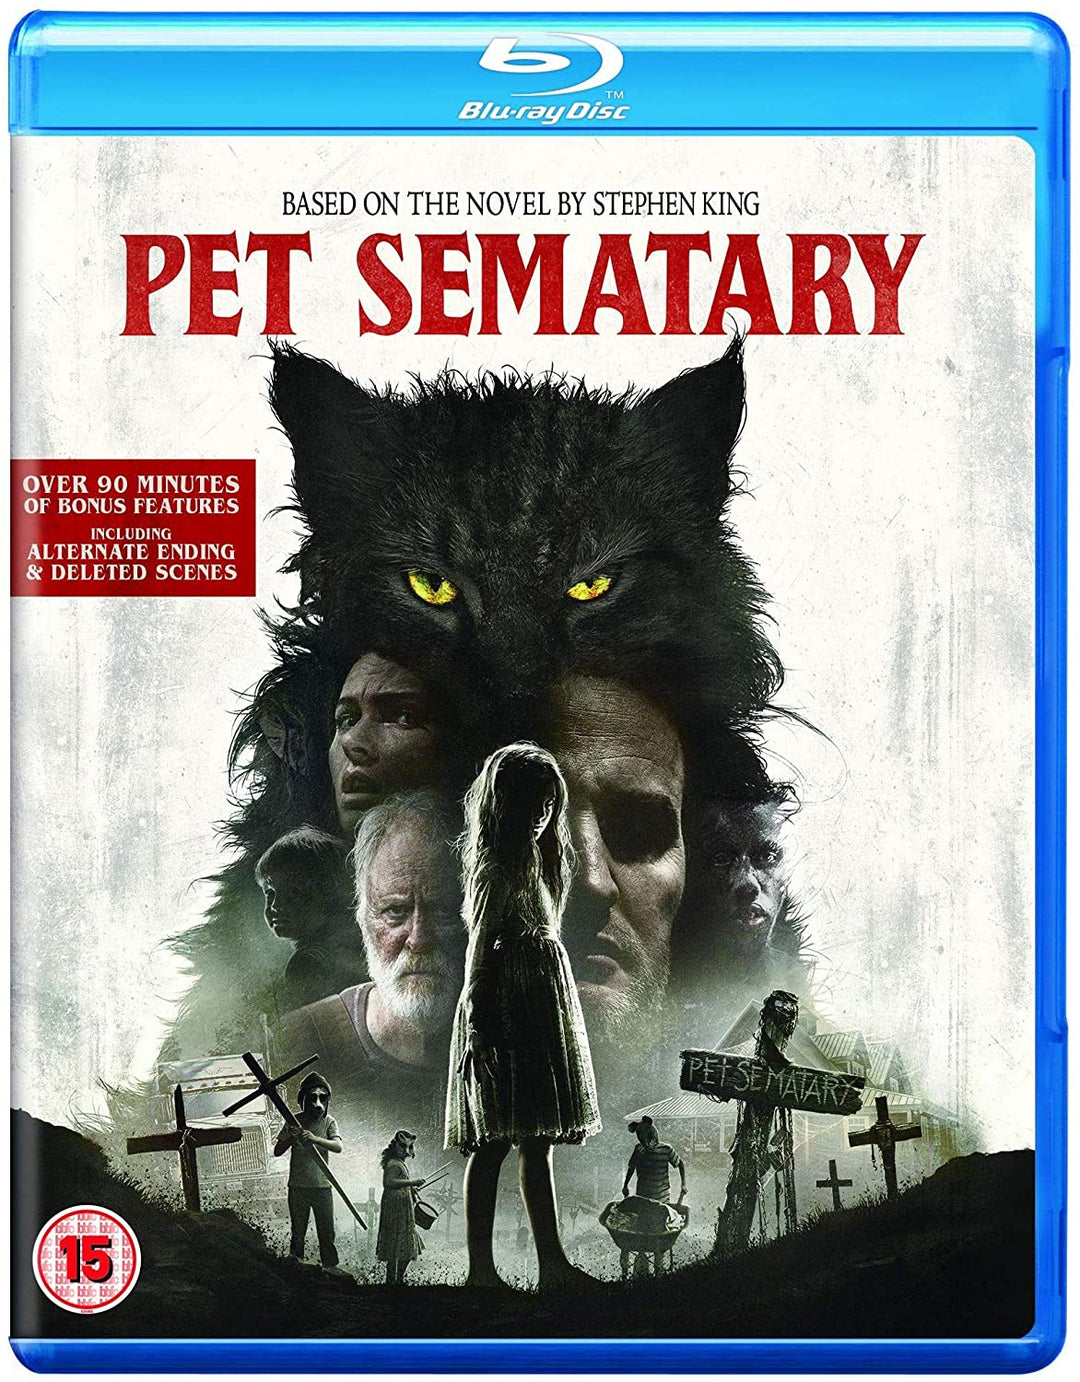 Pet Sematary - Horror/Thriller [Blu-ray]